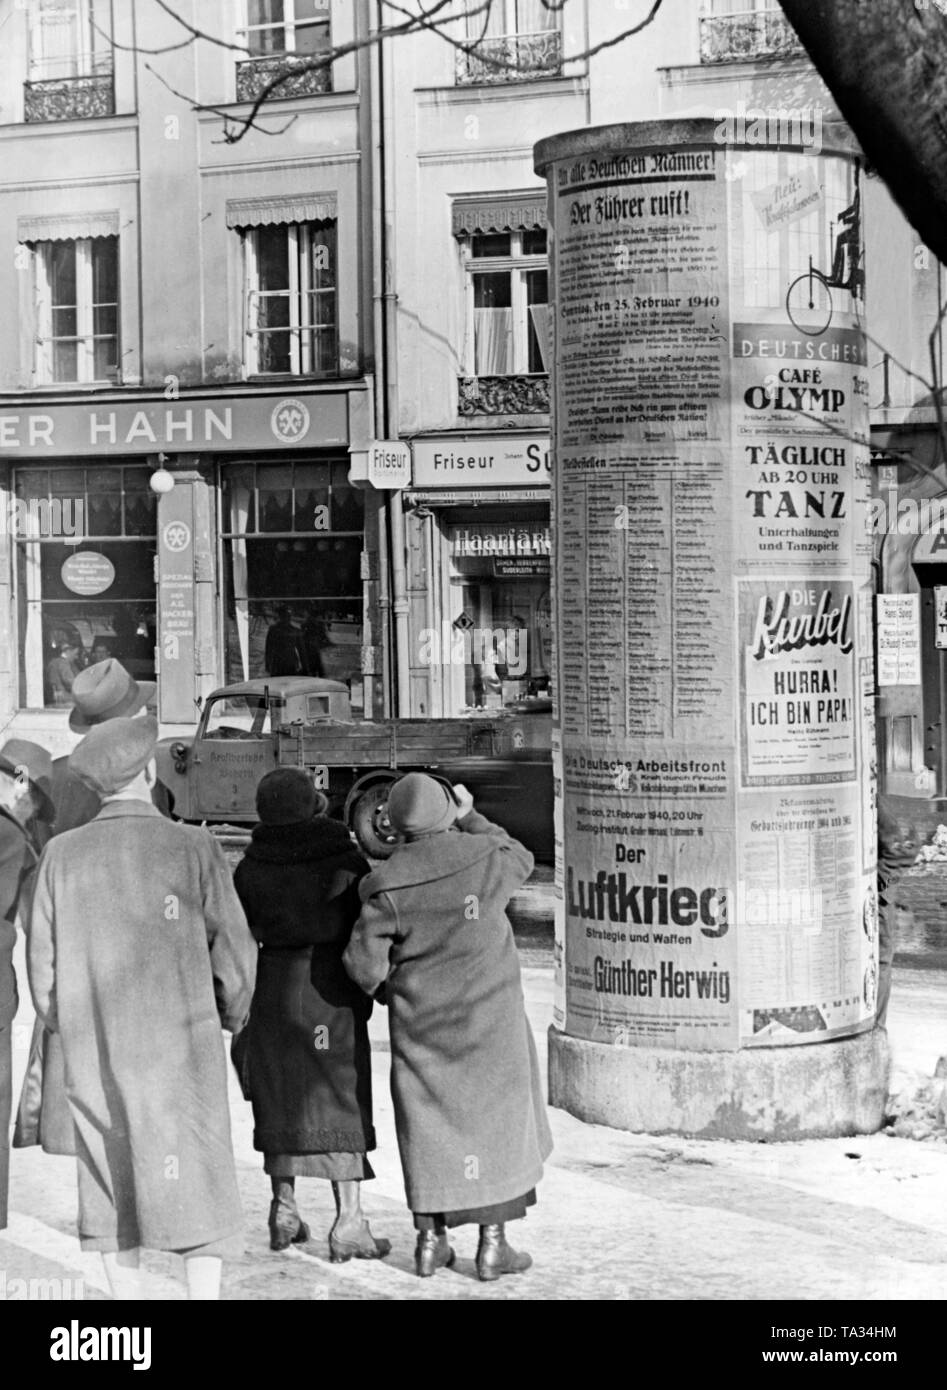 Observer les passants sur les affiches de propagande publicité une colonne dans une ville Bavaroise, Munich probablement. Affiche de propagande est intitulé "Der Führer ruft' ('Le Führer est calling") et déclare la mobilisation de l'année 1922. Un autre poster de la Front du Travail allemand (DAF) annonce la conférence de Guenther Herwig 'Der Luftkrieg und Waffen' ('La stratégie de guerre de l'air et les armes"). Banque D'Images